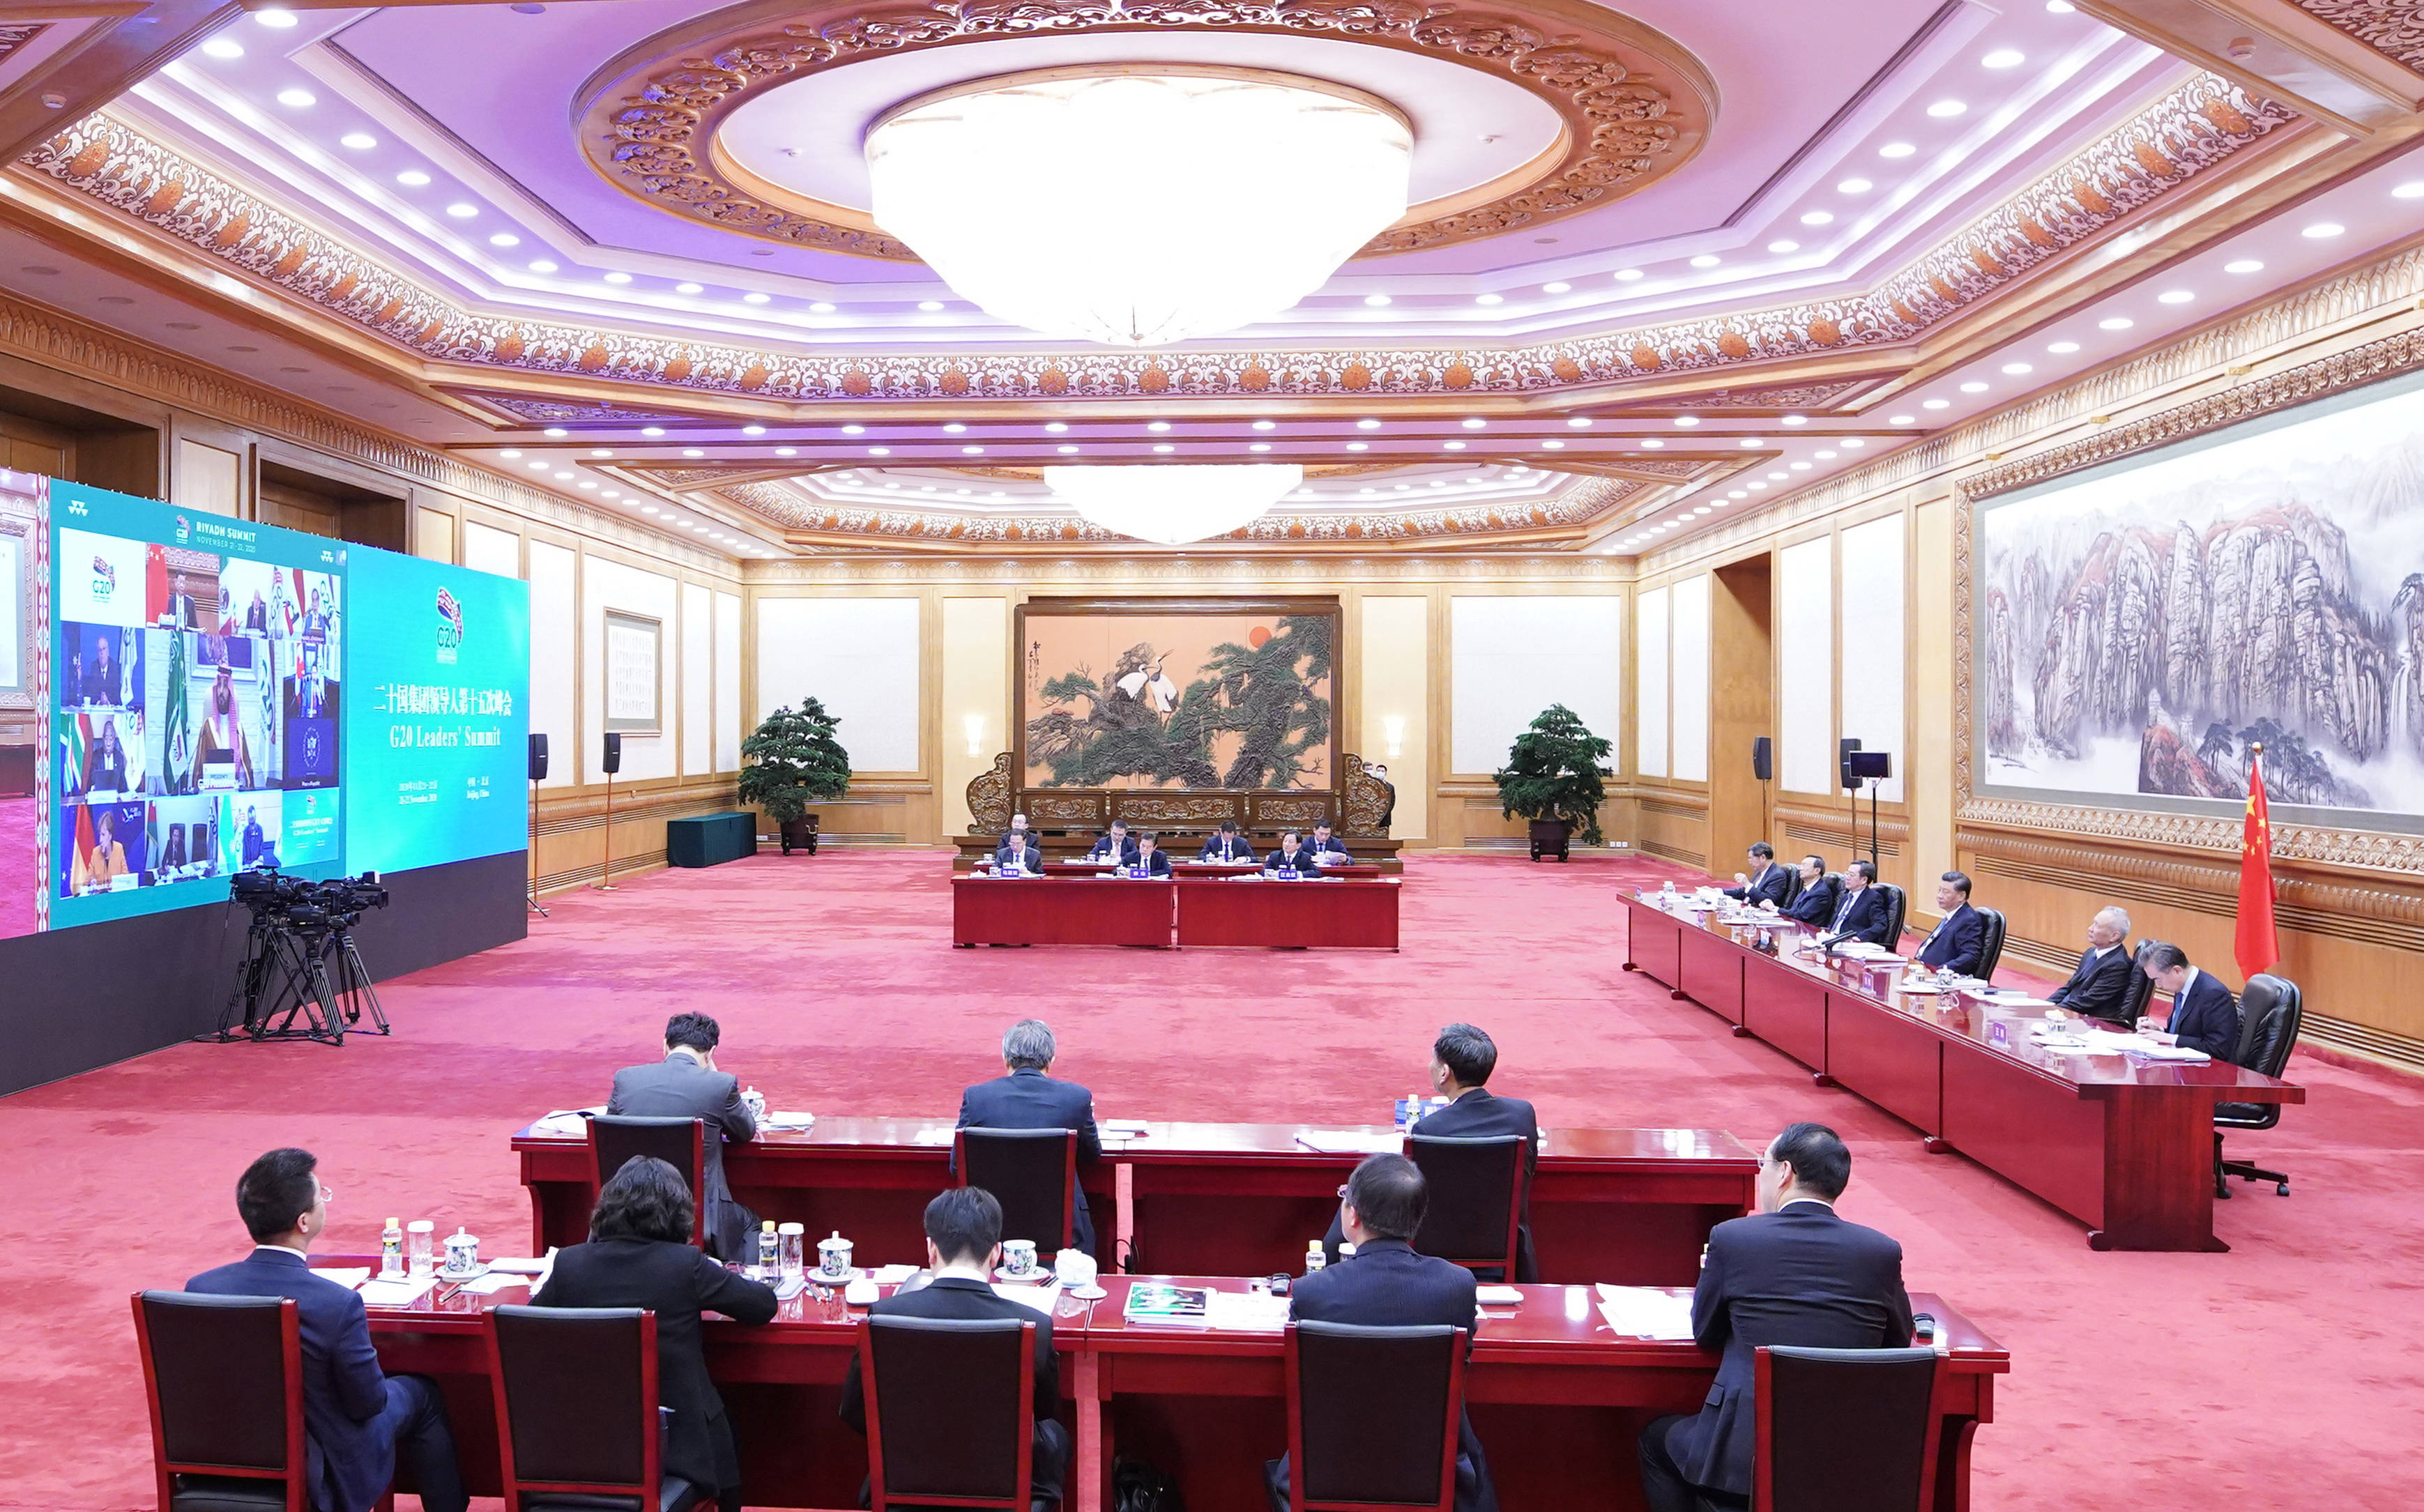 习近平出席二十国集团领导人第十五次峰会第一阶段会议并发表重要讲插图1